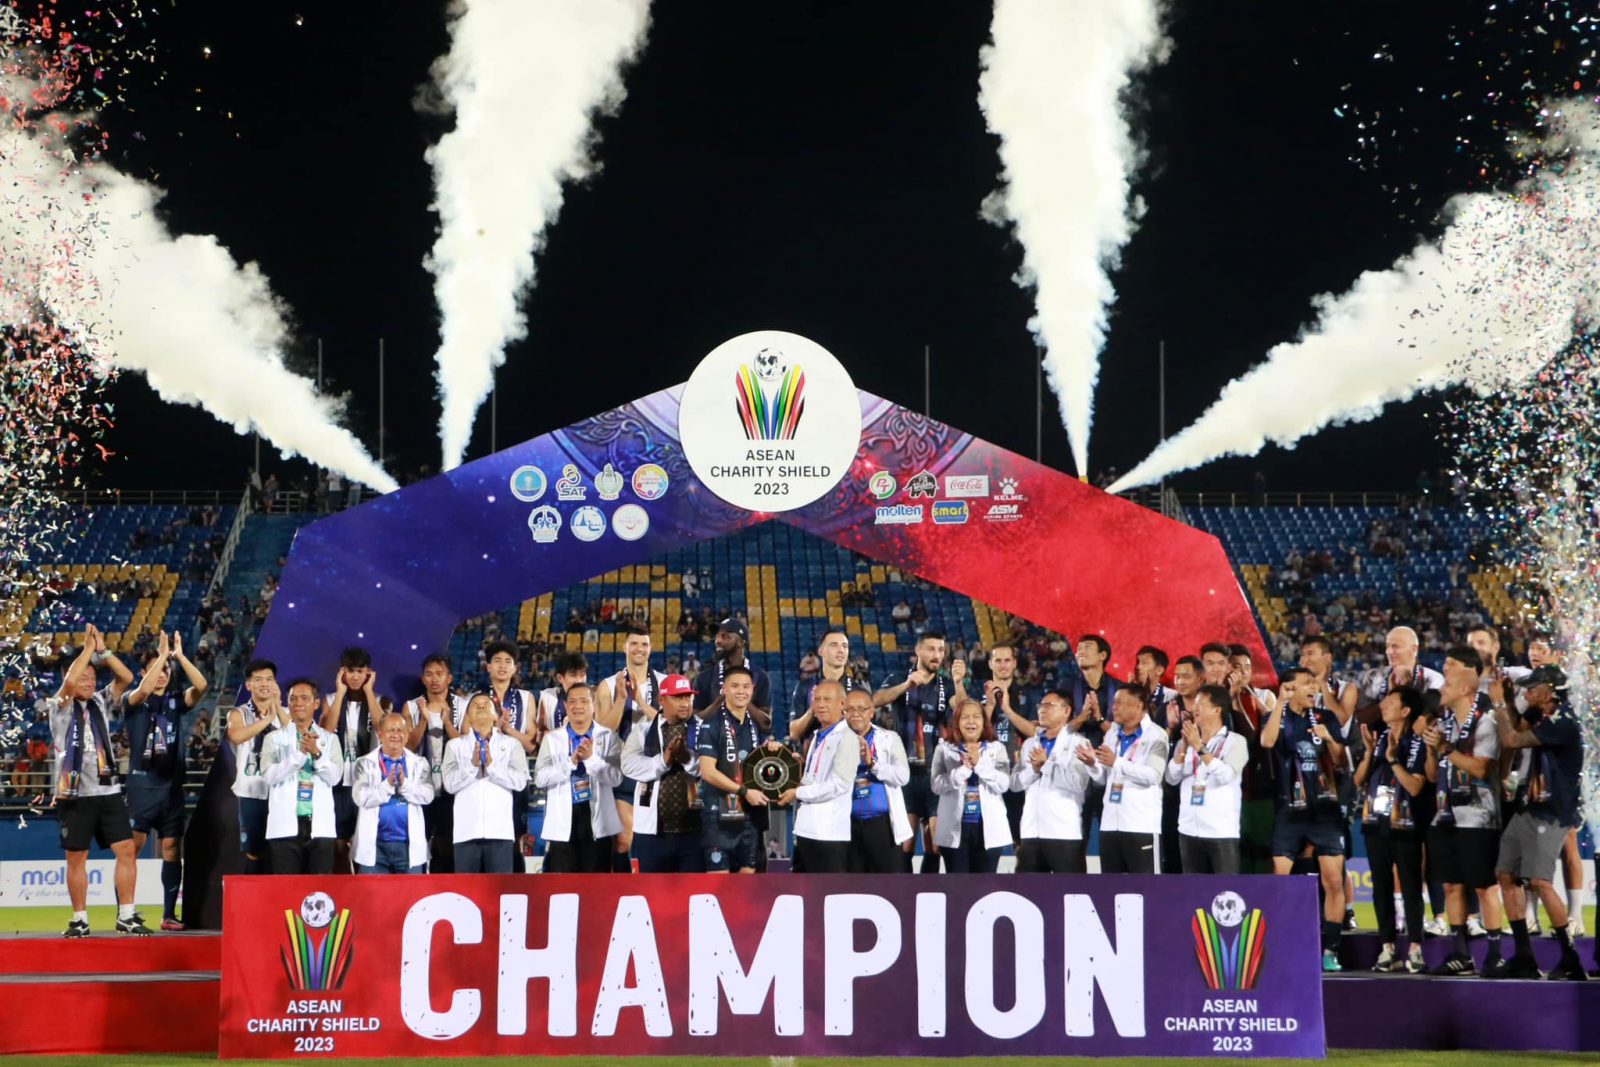 รมต. พิพัฒน์ เปิดการแข่งขันฟุตบอลอาชีพนัดพิเศษเพื่อการกุศลรายการ ASEAN CHARITY SHIELD 2023 สโมสรบุรีรัมย์ ยูไนเต็ด พบกับ สโมสรกลันตัน เอฟซี มาเลเซีย – ข่าวกีฬา